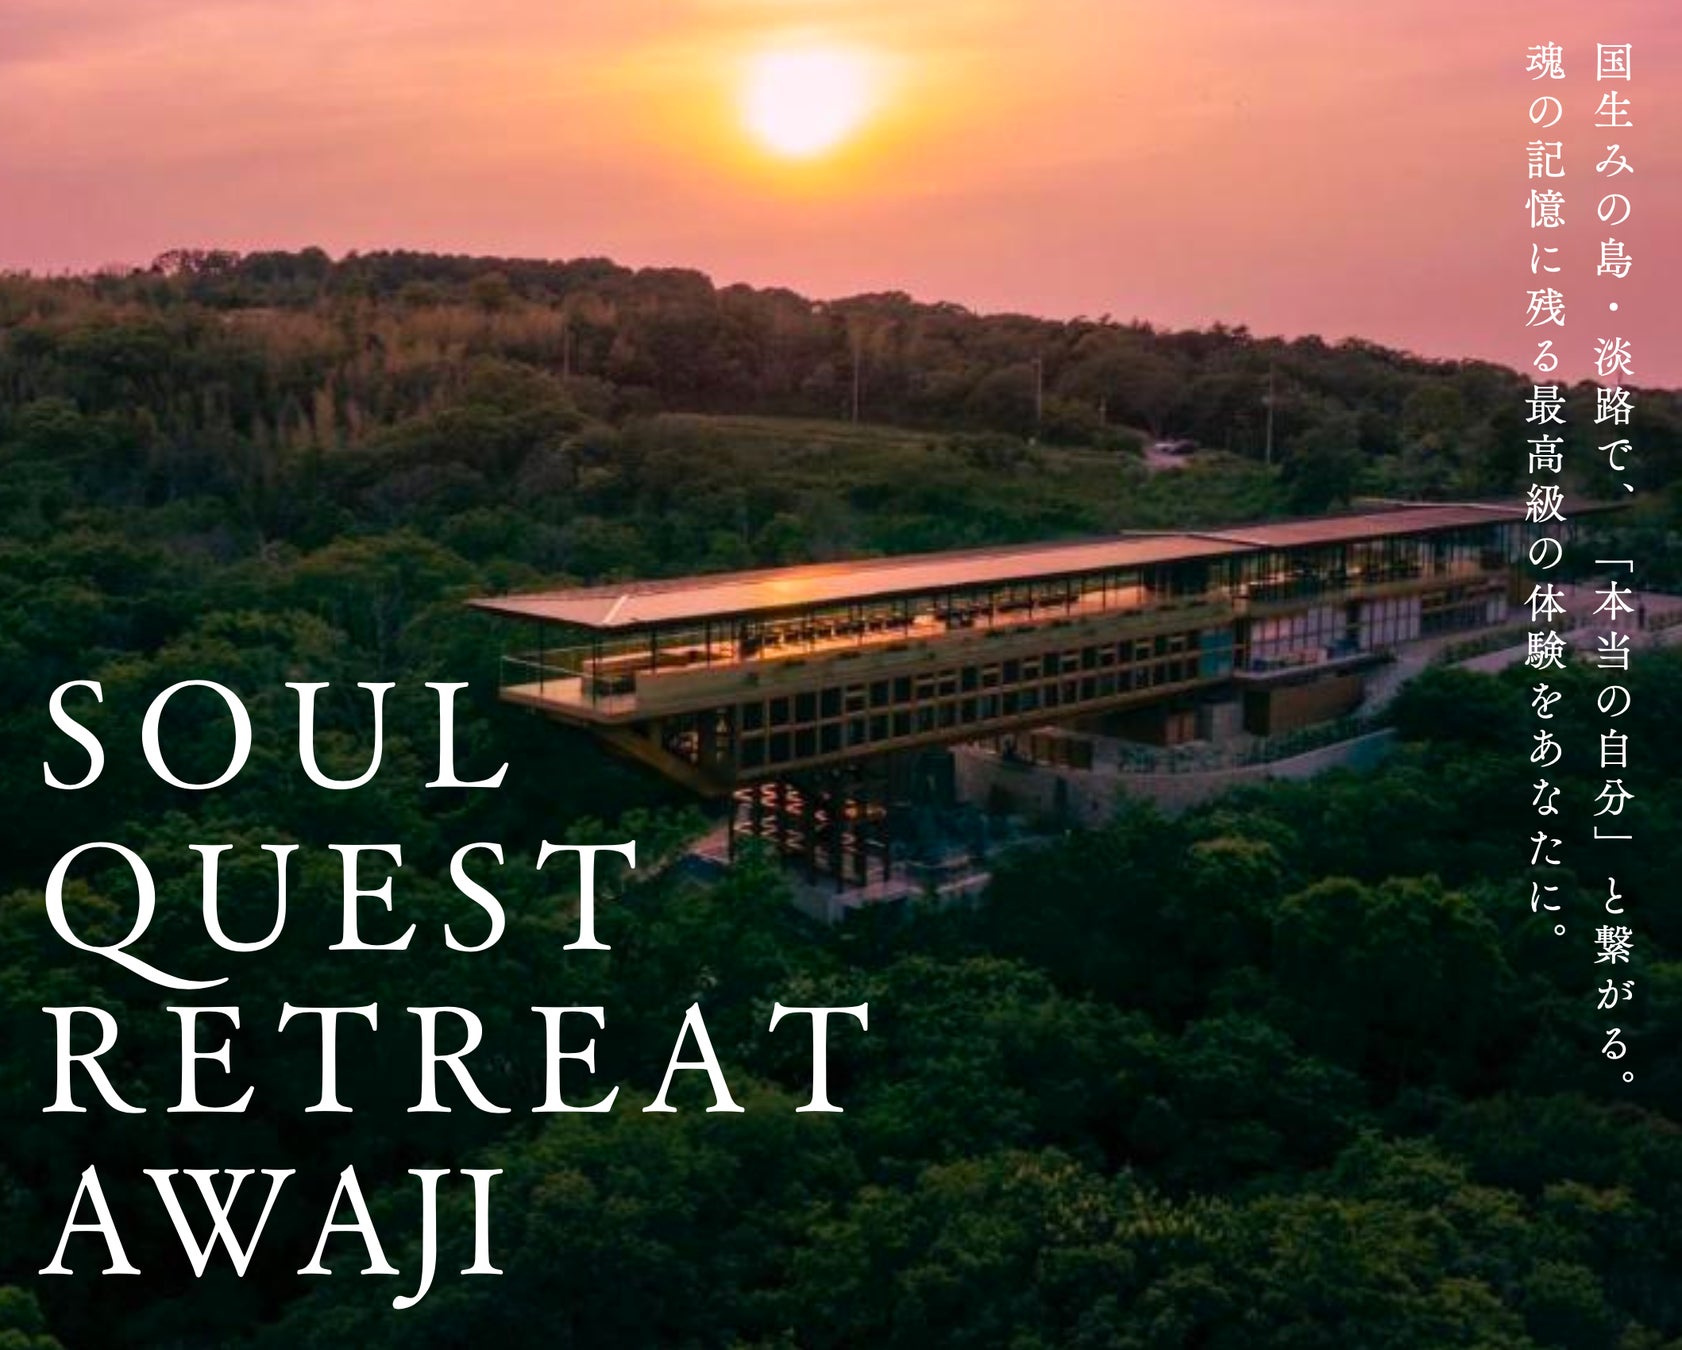 言葉を超えた音と声の力で、”本当の自分”と繋がる2泊3日のメディテーションプログラム『Soul Quest Retreat』、5月25日より淡路島にて開催。